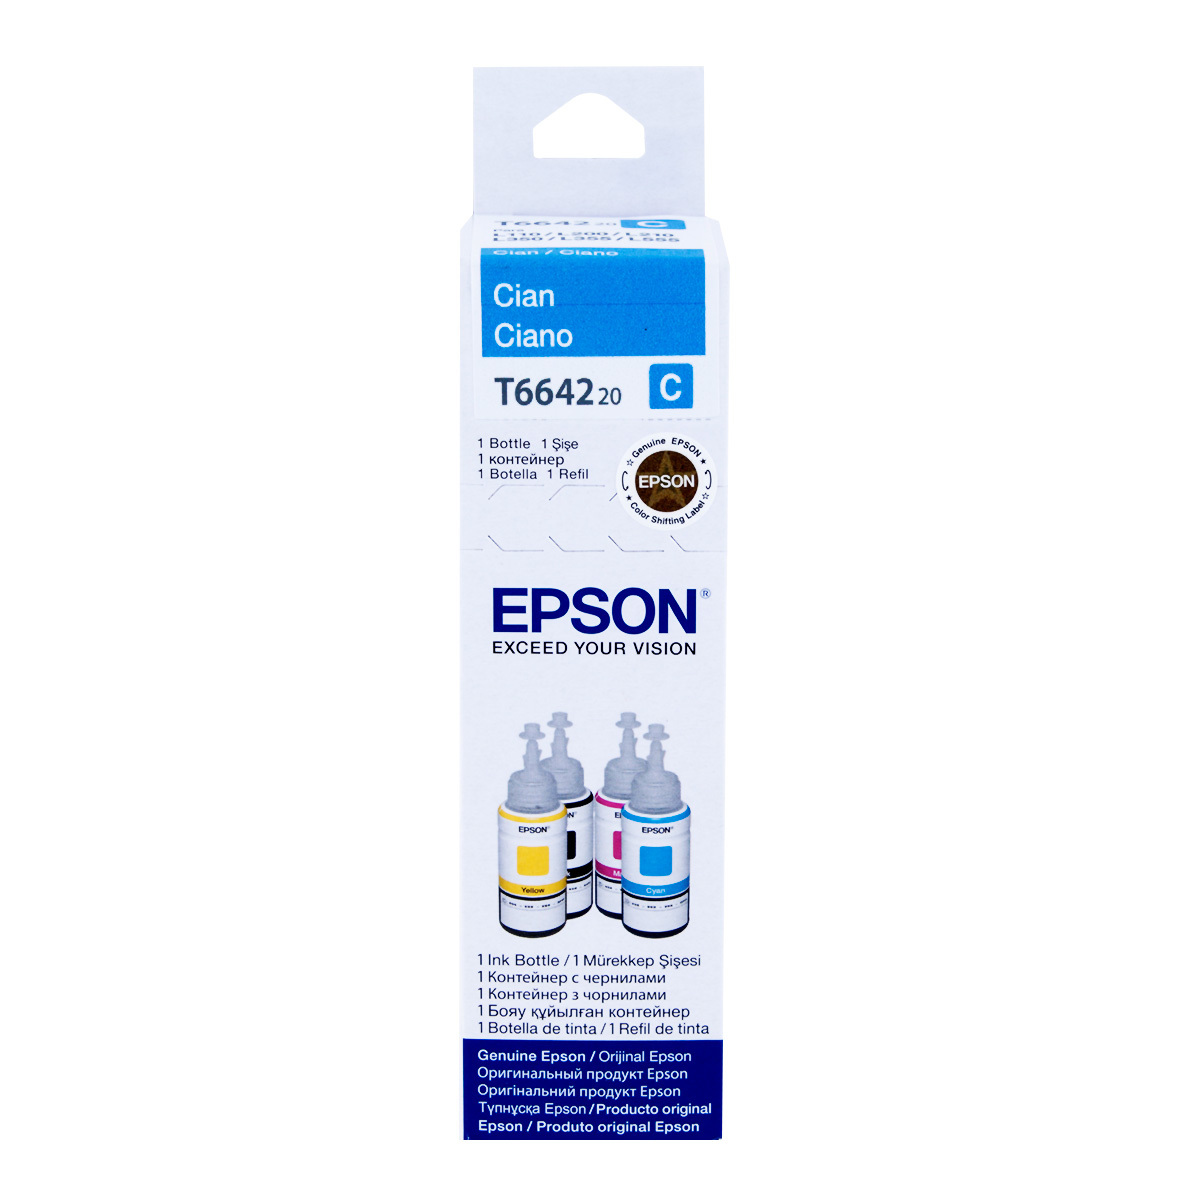 Botella de Tinta Epson T664 / T664220 AL / Cyan / 6500 páginas / EcoTank